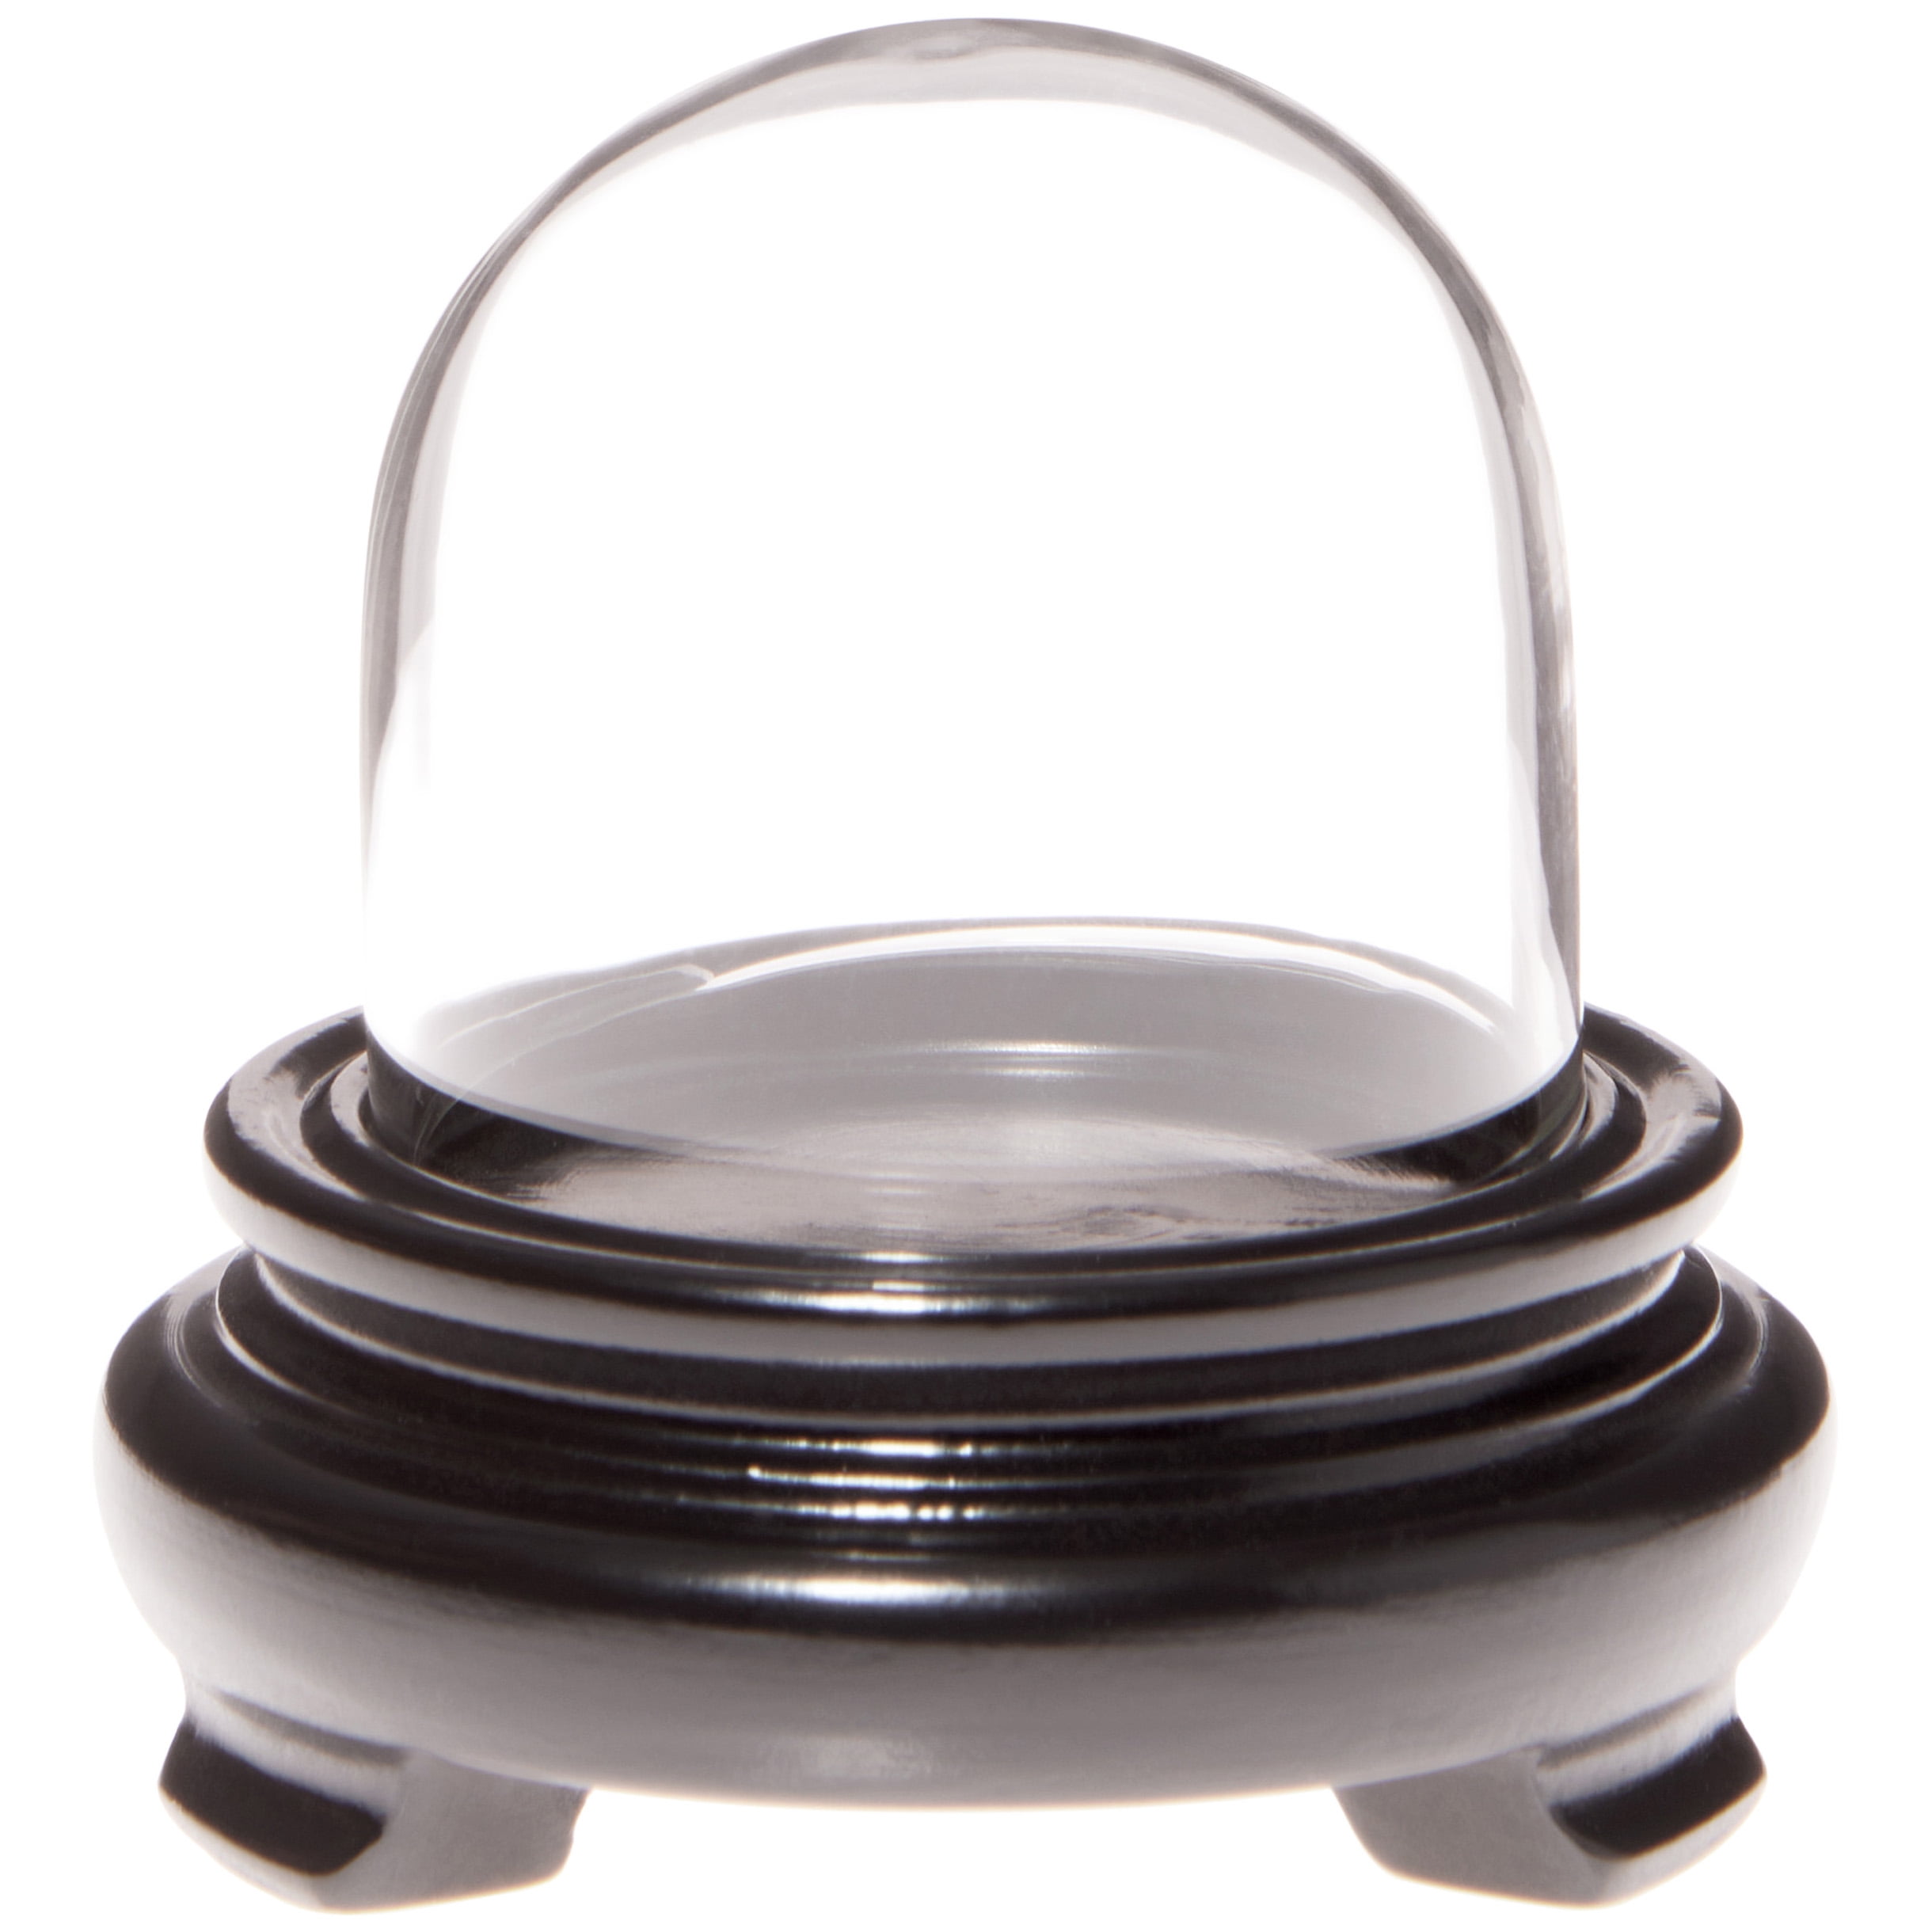 Plymor 1.875" x 1.875" Mini Glass Display Dome Cloche no Base 